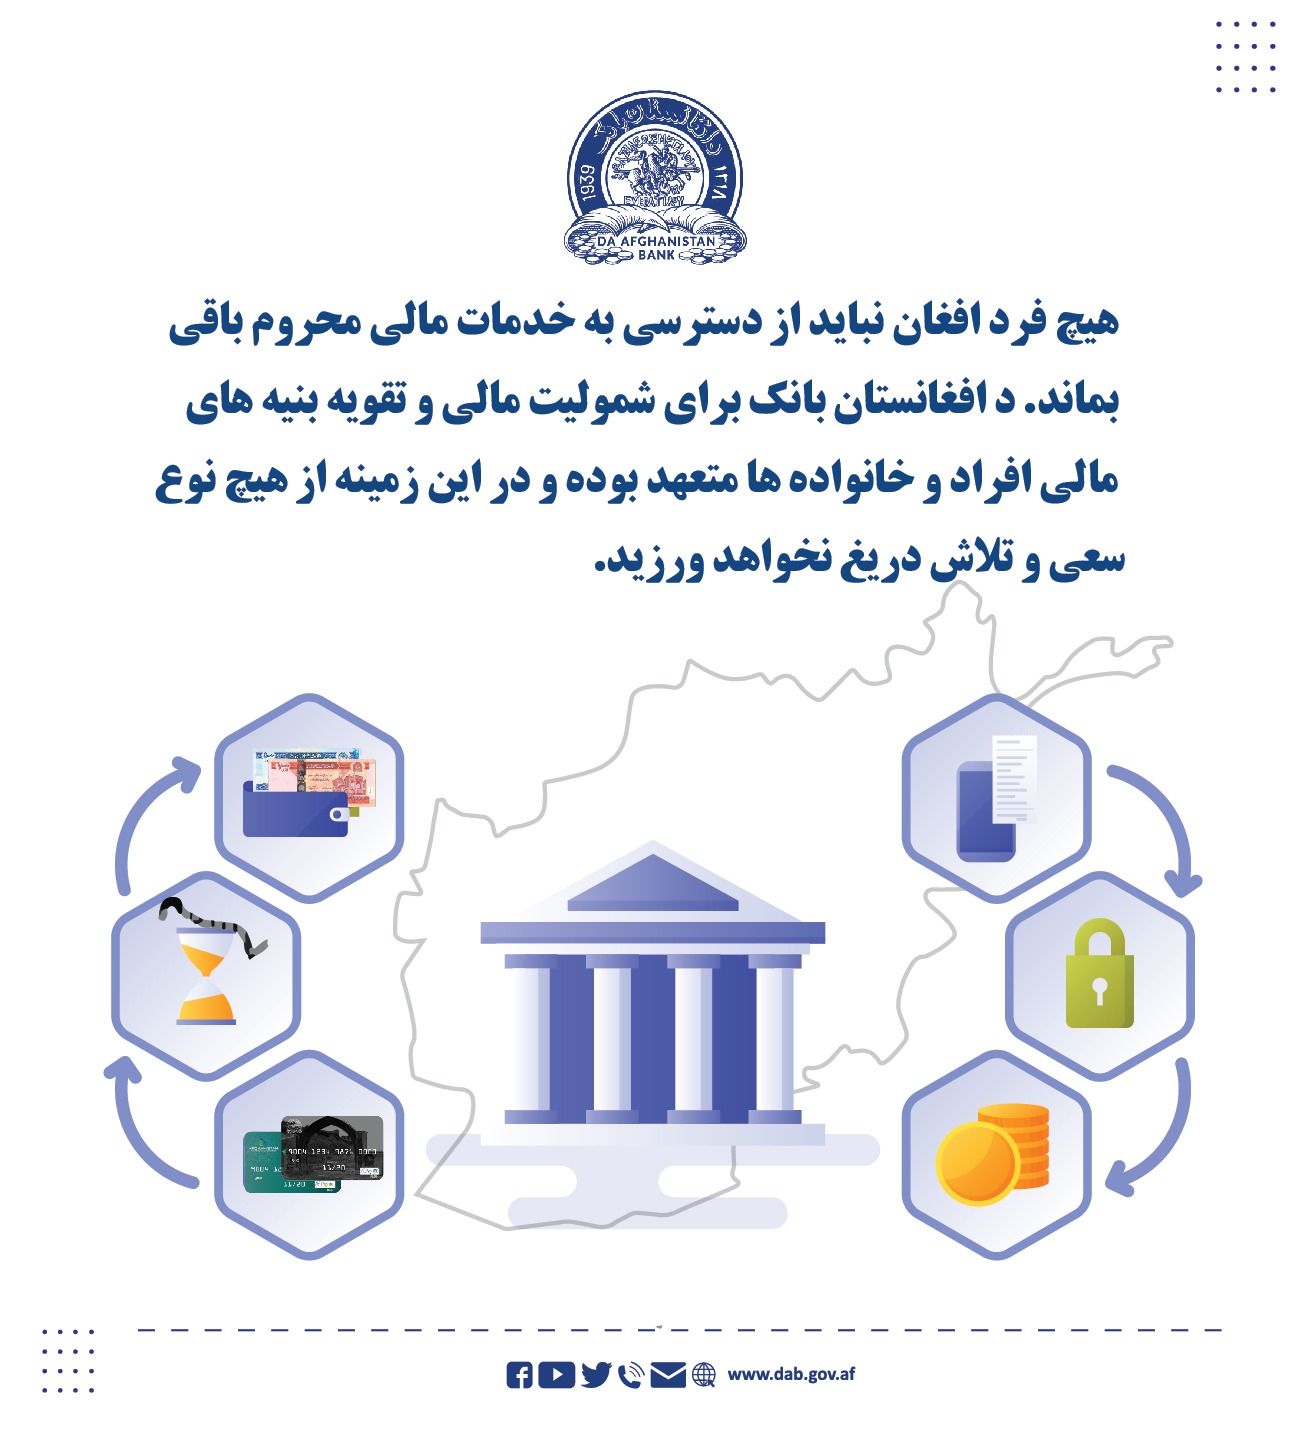 هیچ فرد افغانی نباید از دسترسی به خدمات مالی محروم باقی بماند